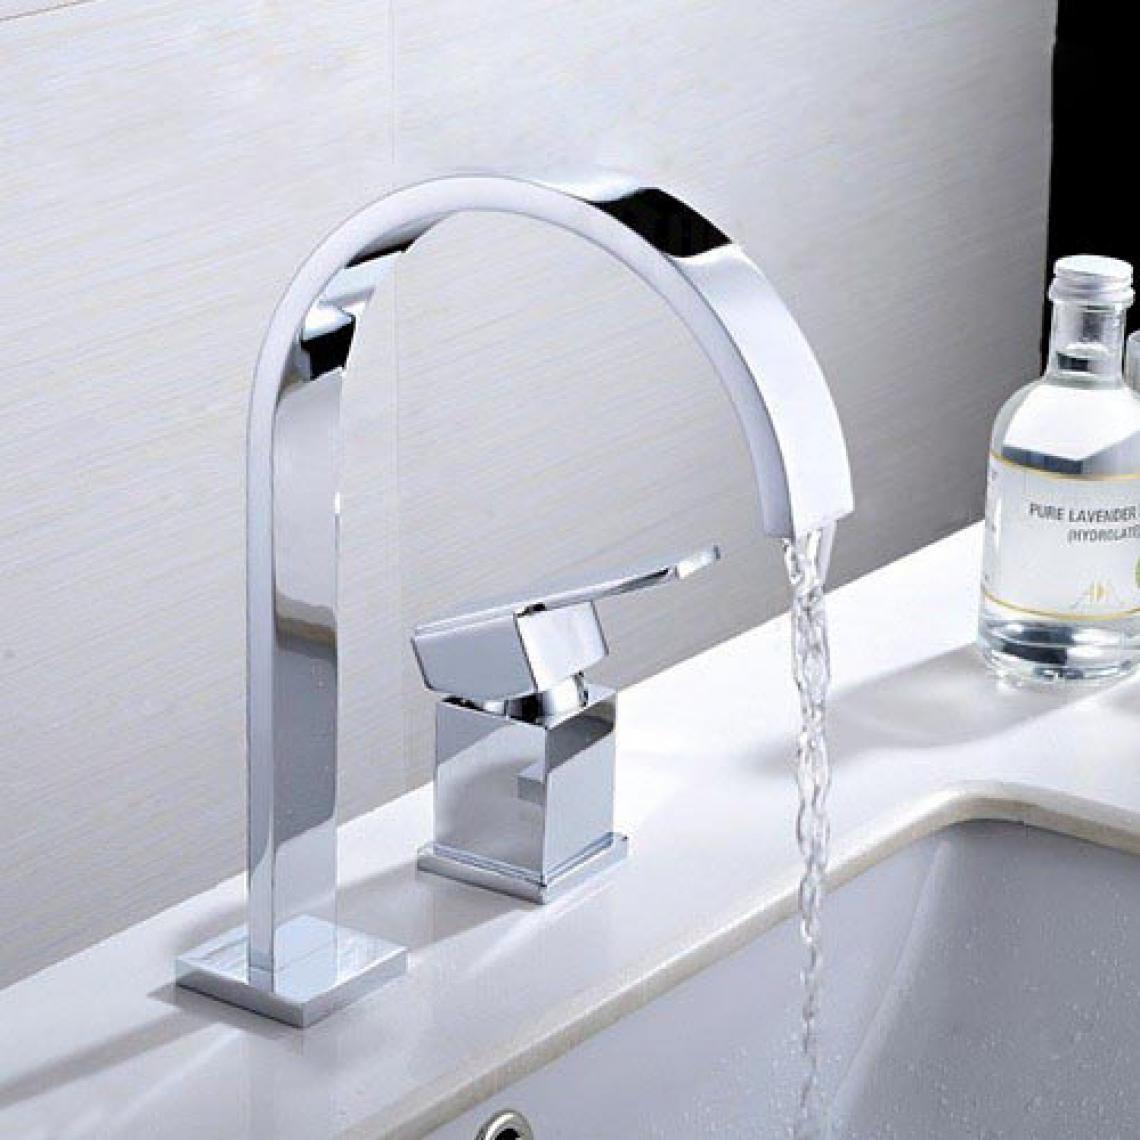 Kroos - Robinet lavabo mitigeur contemporain en chromé poli - Robinet de lavabo